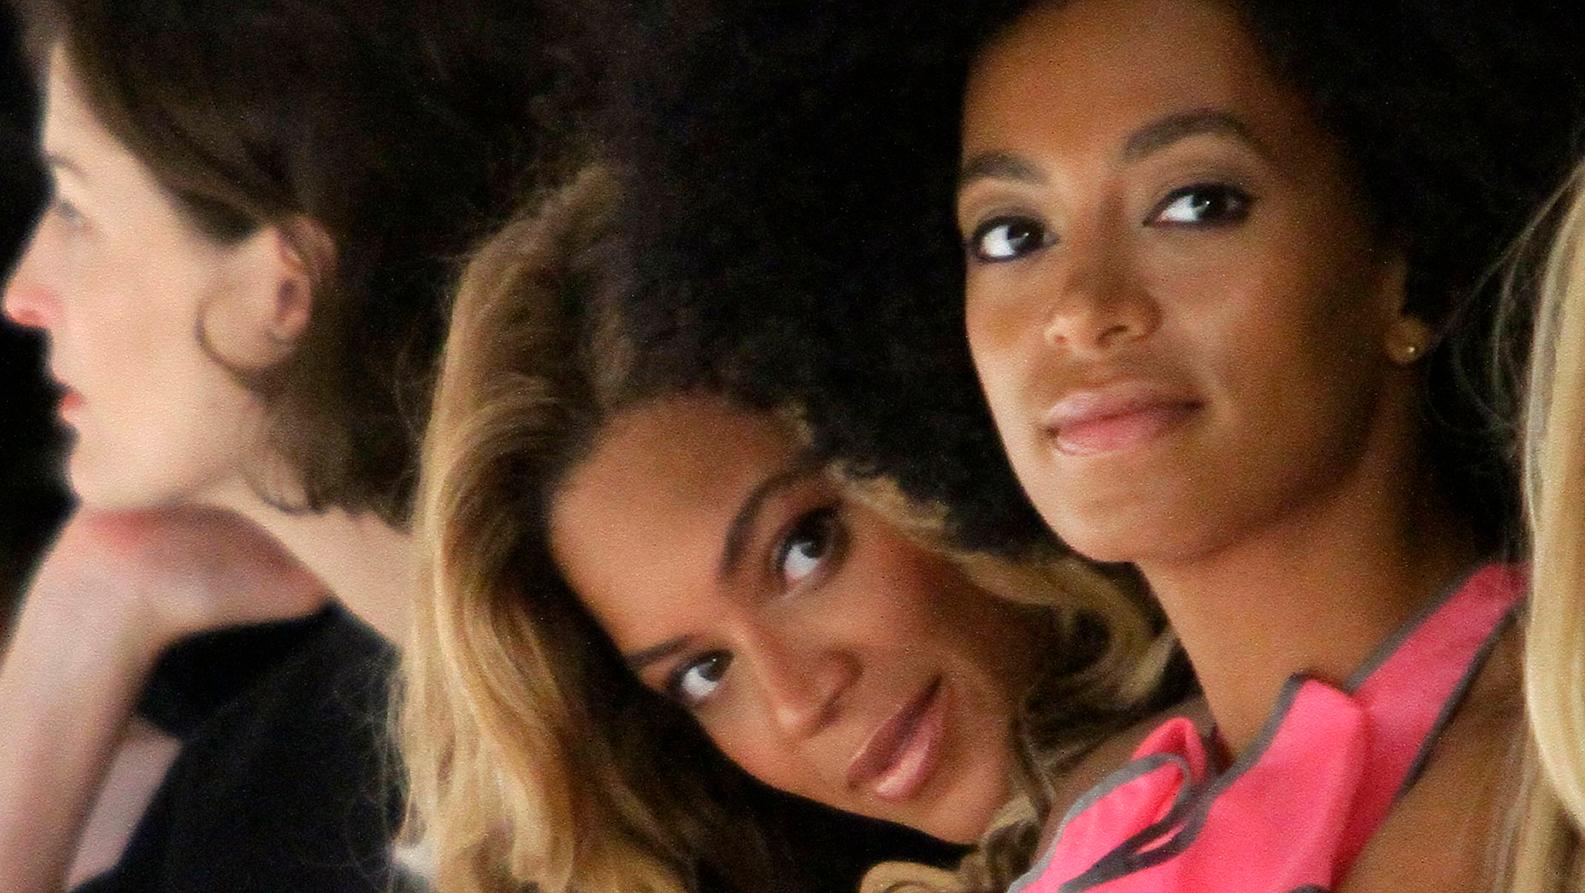 Systrarna Beyoncé och Solange Knowles.